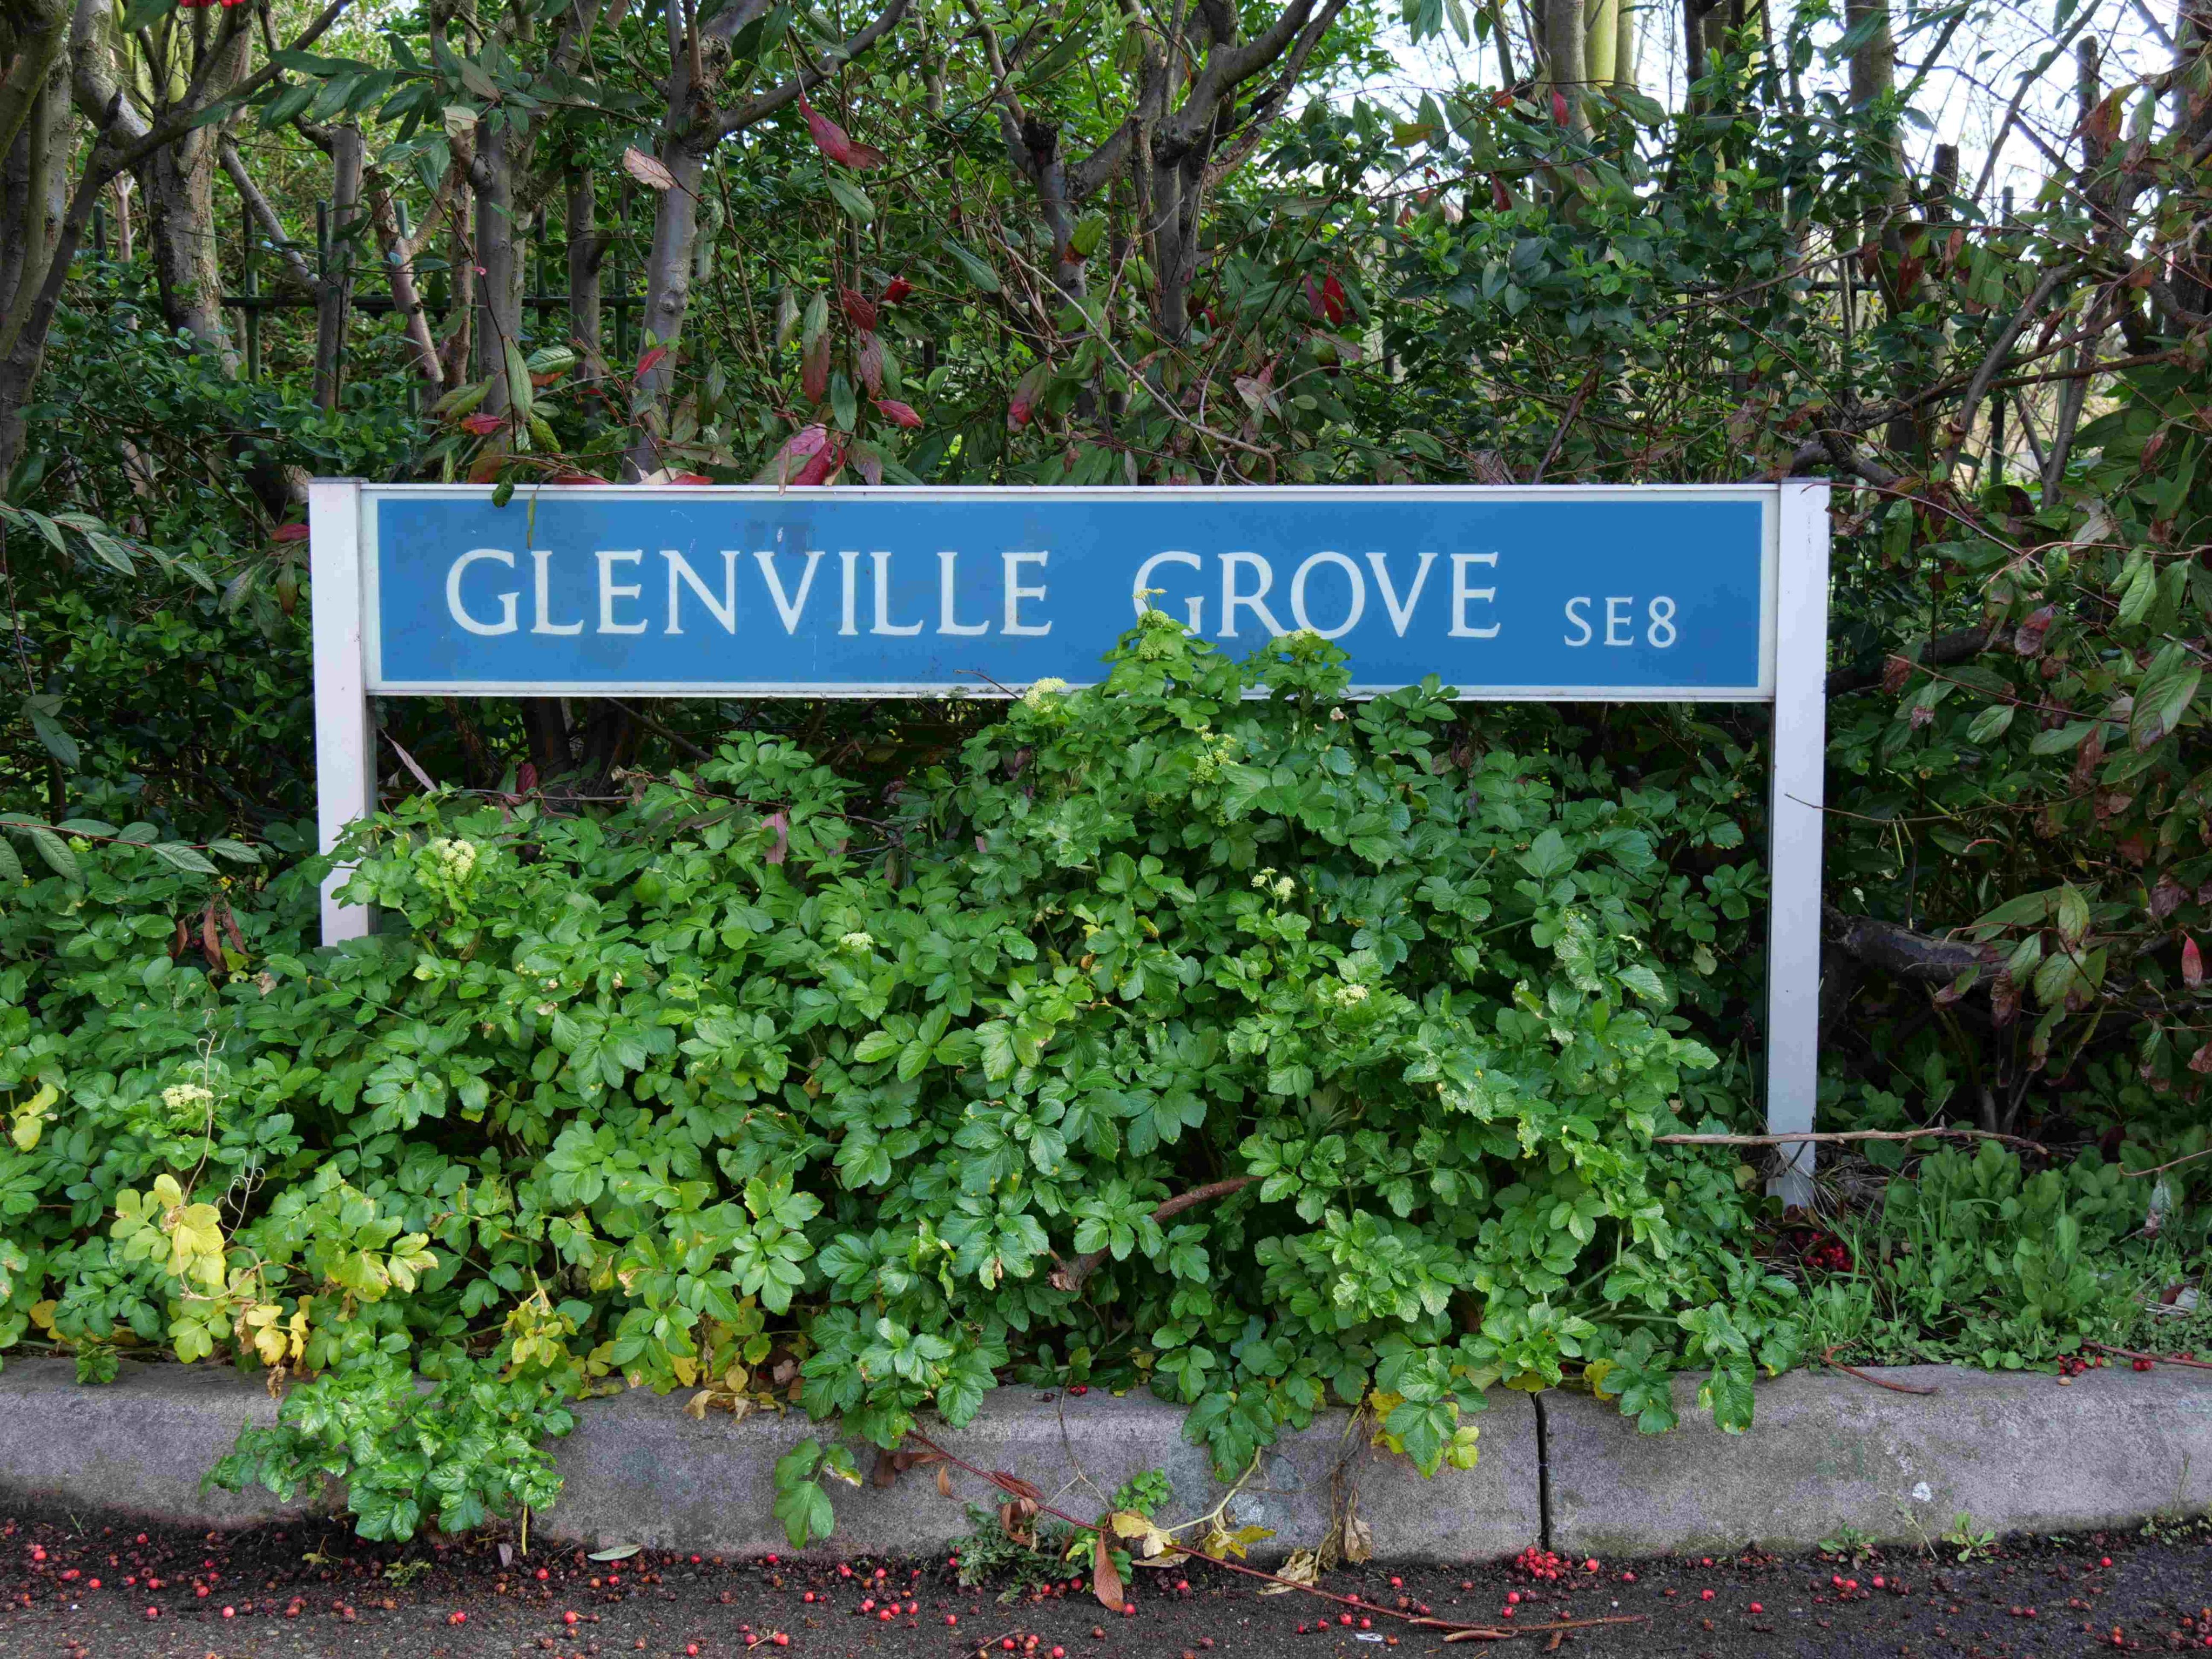 Glenville Grove